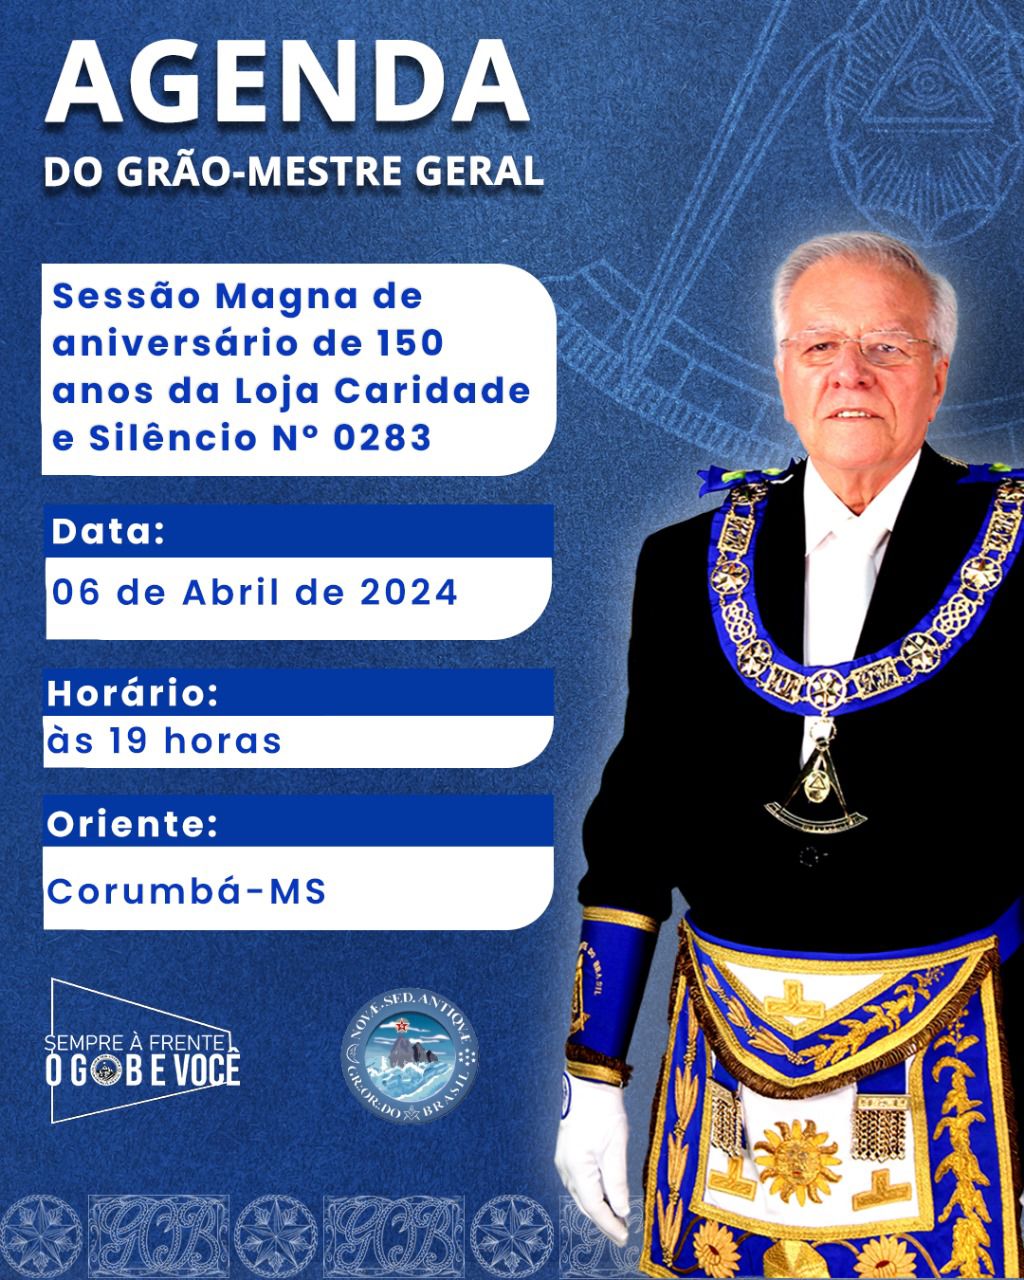 You are currently viewing Agenda do Grão-Mestre Geral